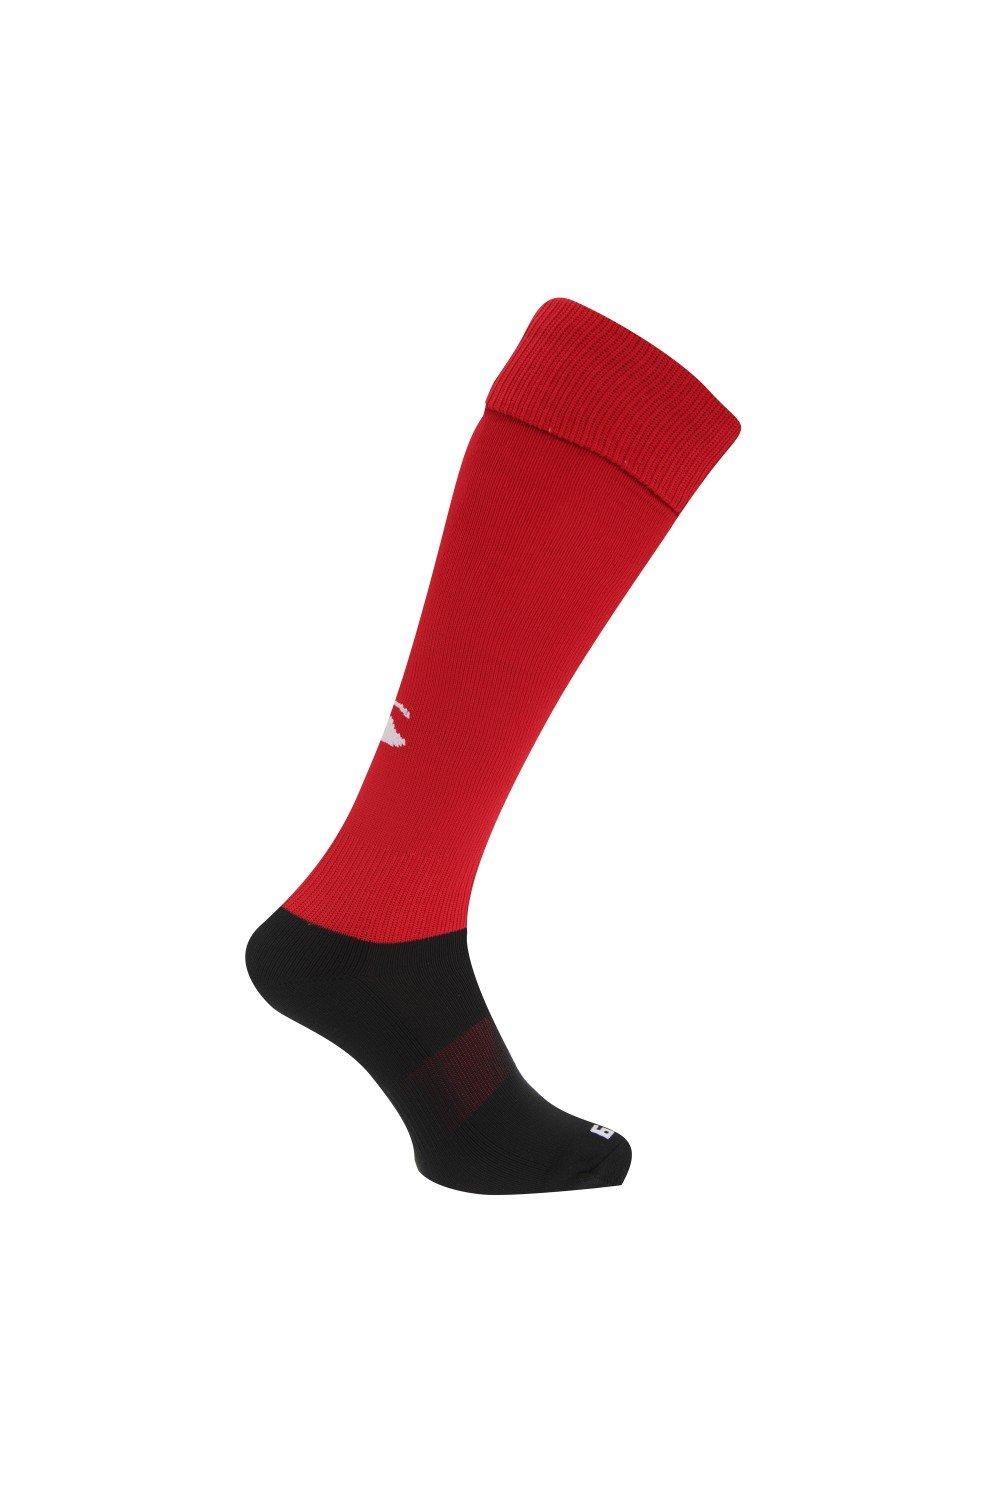 Спортивные носки для игры в регби Canterbury, красный регбийка игровая размер s русский 48 сборной россии по регби canterbury